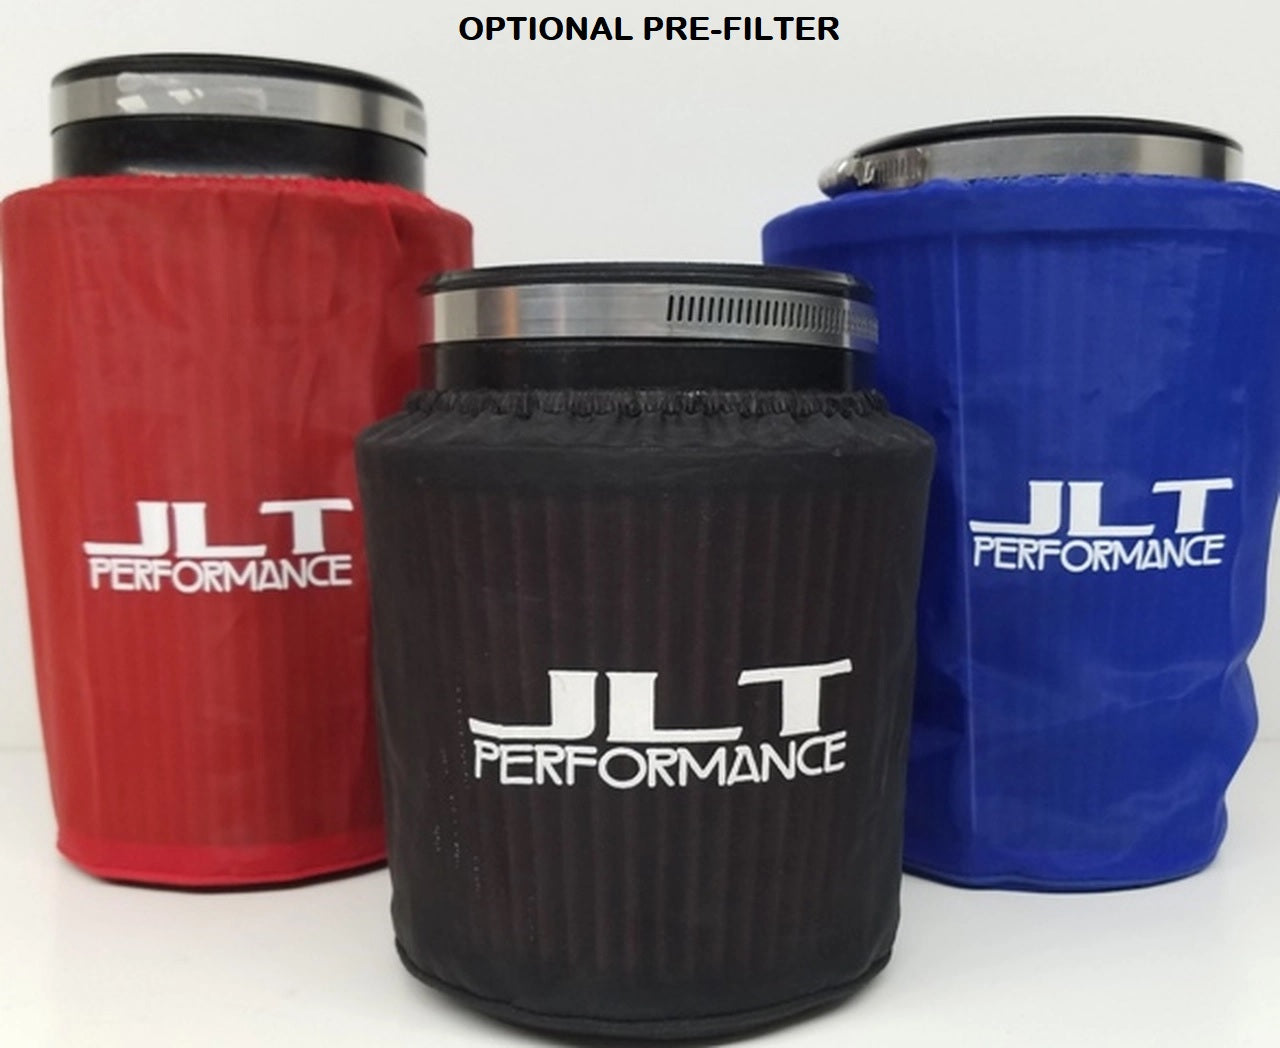 JLT Pre-Filter for JLT Mopar intakes with 5x7 Filter